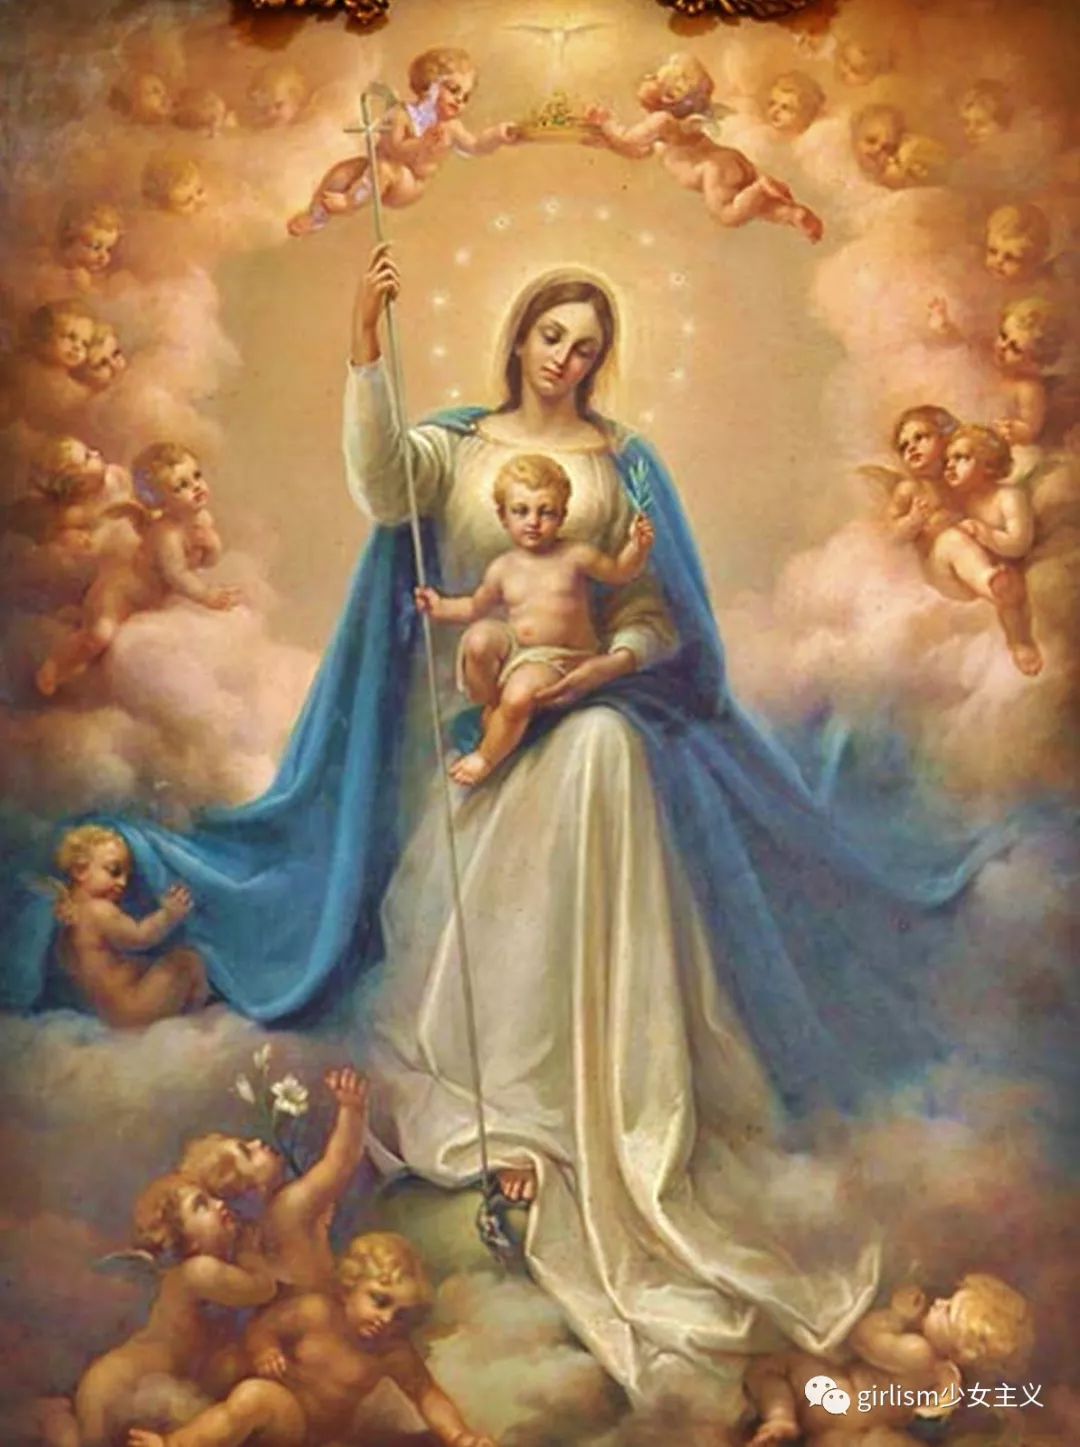 合掌祈祷的女性,根据服饰装扮与周围的元素推测她应该是圣母玛利亚